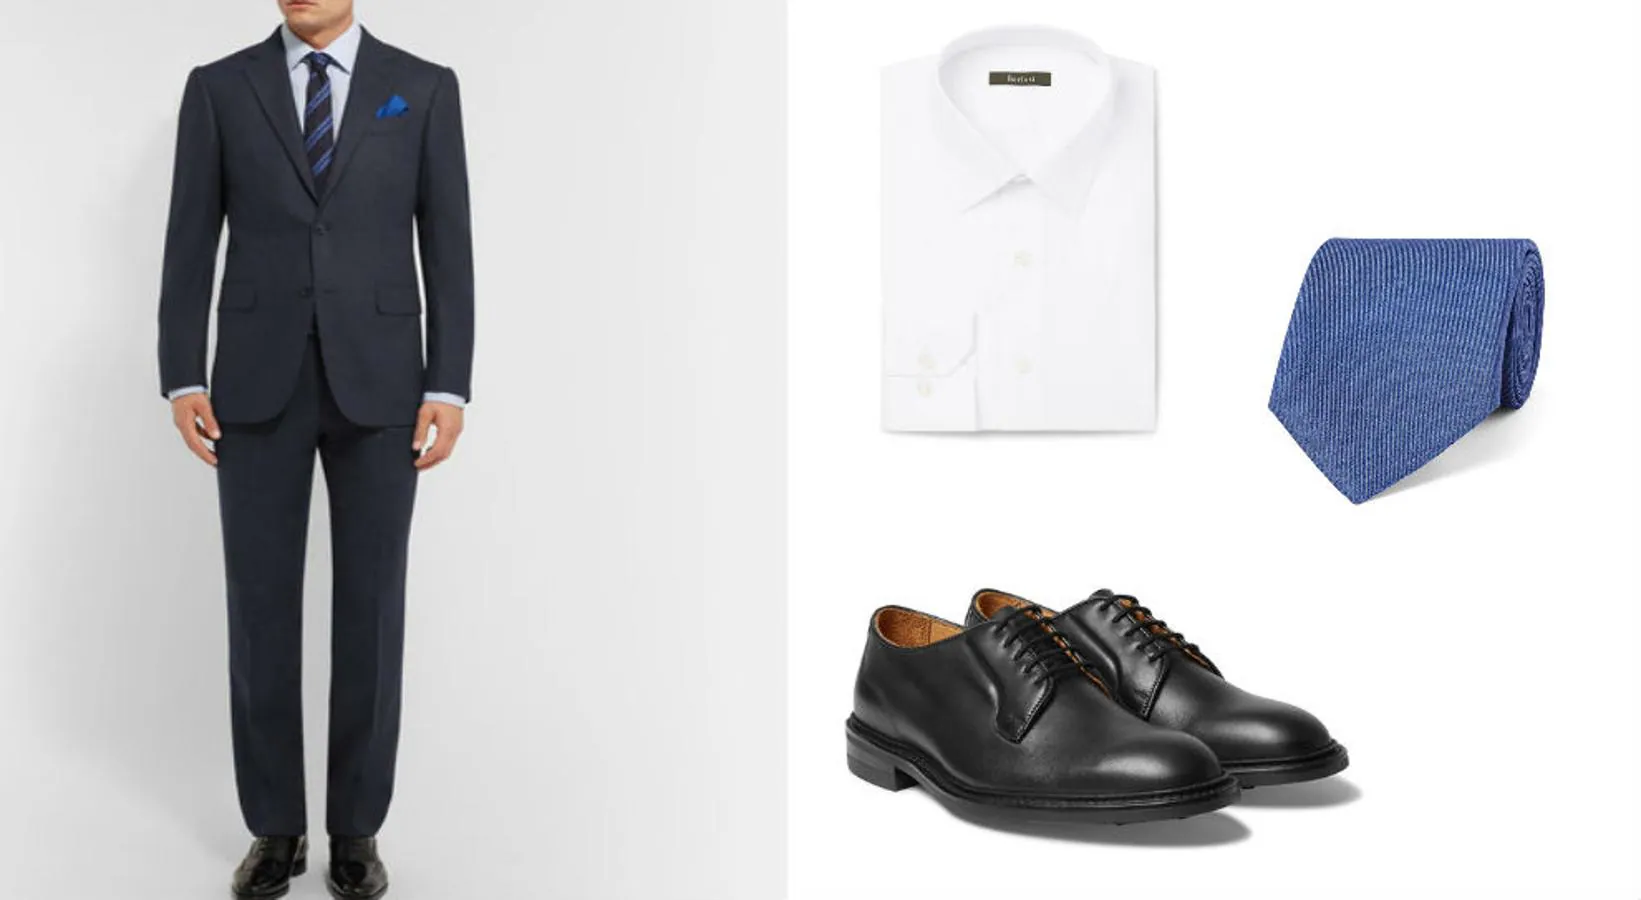 Look inspirado en Frank Underwood, de 'House of cards'. Traje azul de Ermenegildo Zegna (Precio: 1990 euros), camisa blanca de Berluti (Precio: 330 euros), corbata azul de Carvet (Precio: 195 euros) y zapatos de trickers (Precio: 490 euros).